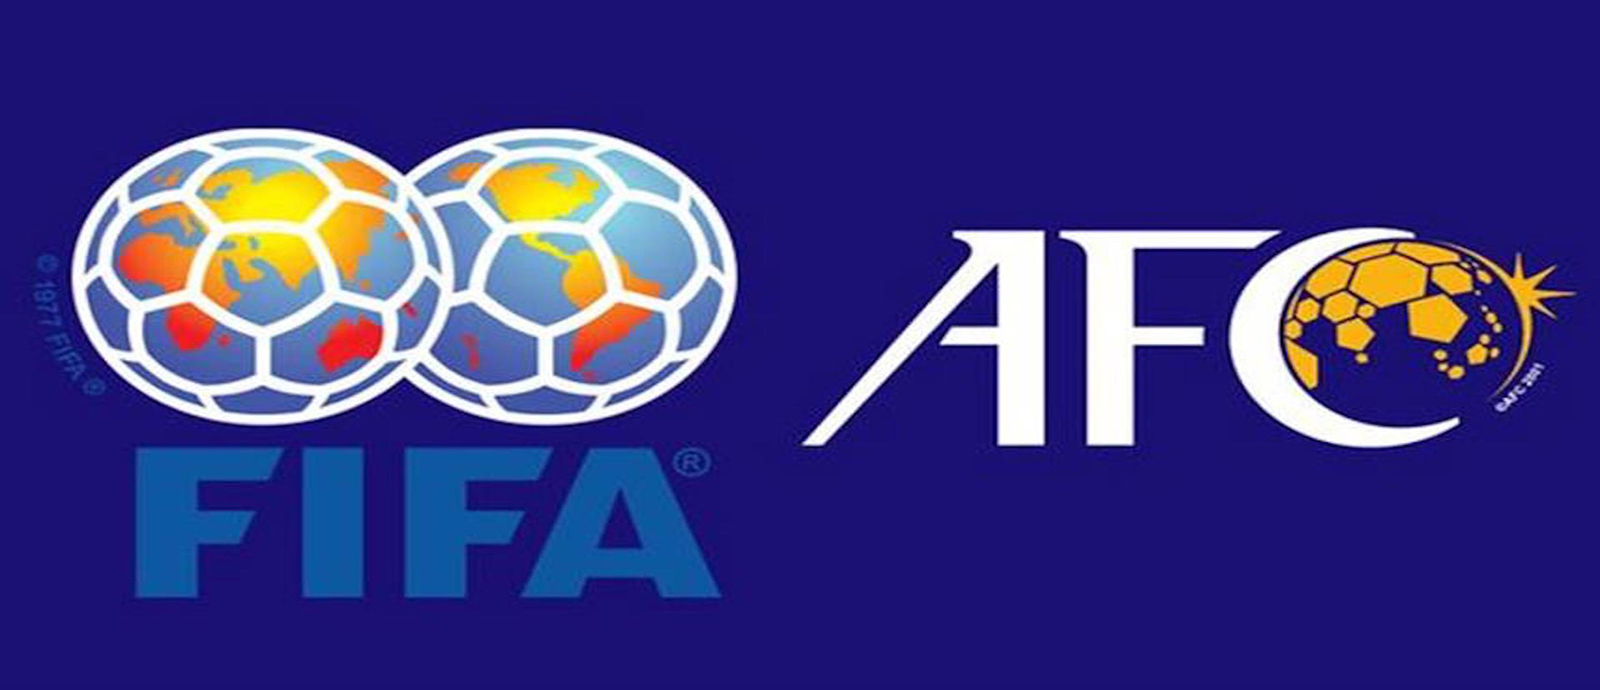 الاتحاد الآسيوي يعتمد نظام تصفيات مونديال 2026 وكأس آسيا 2027 - كرة القدم - الأخبار - قنوات الكأس